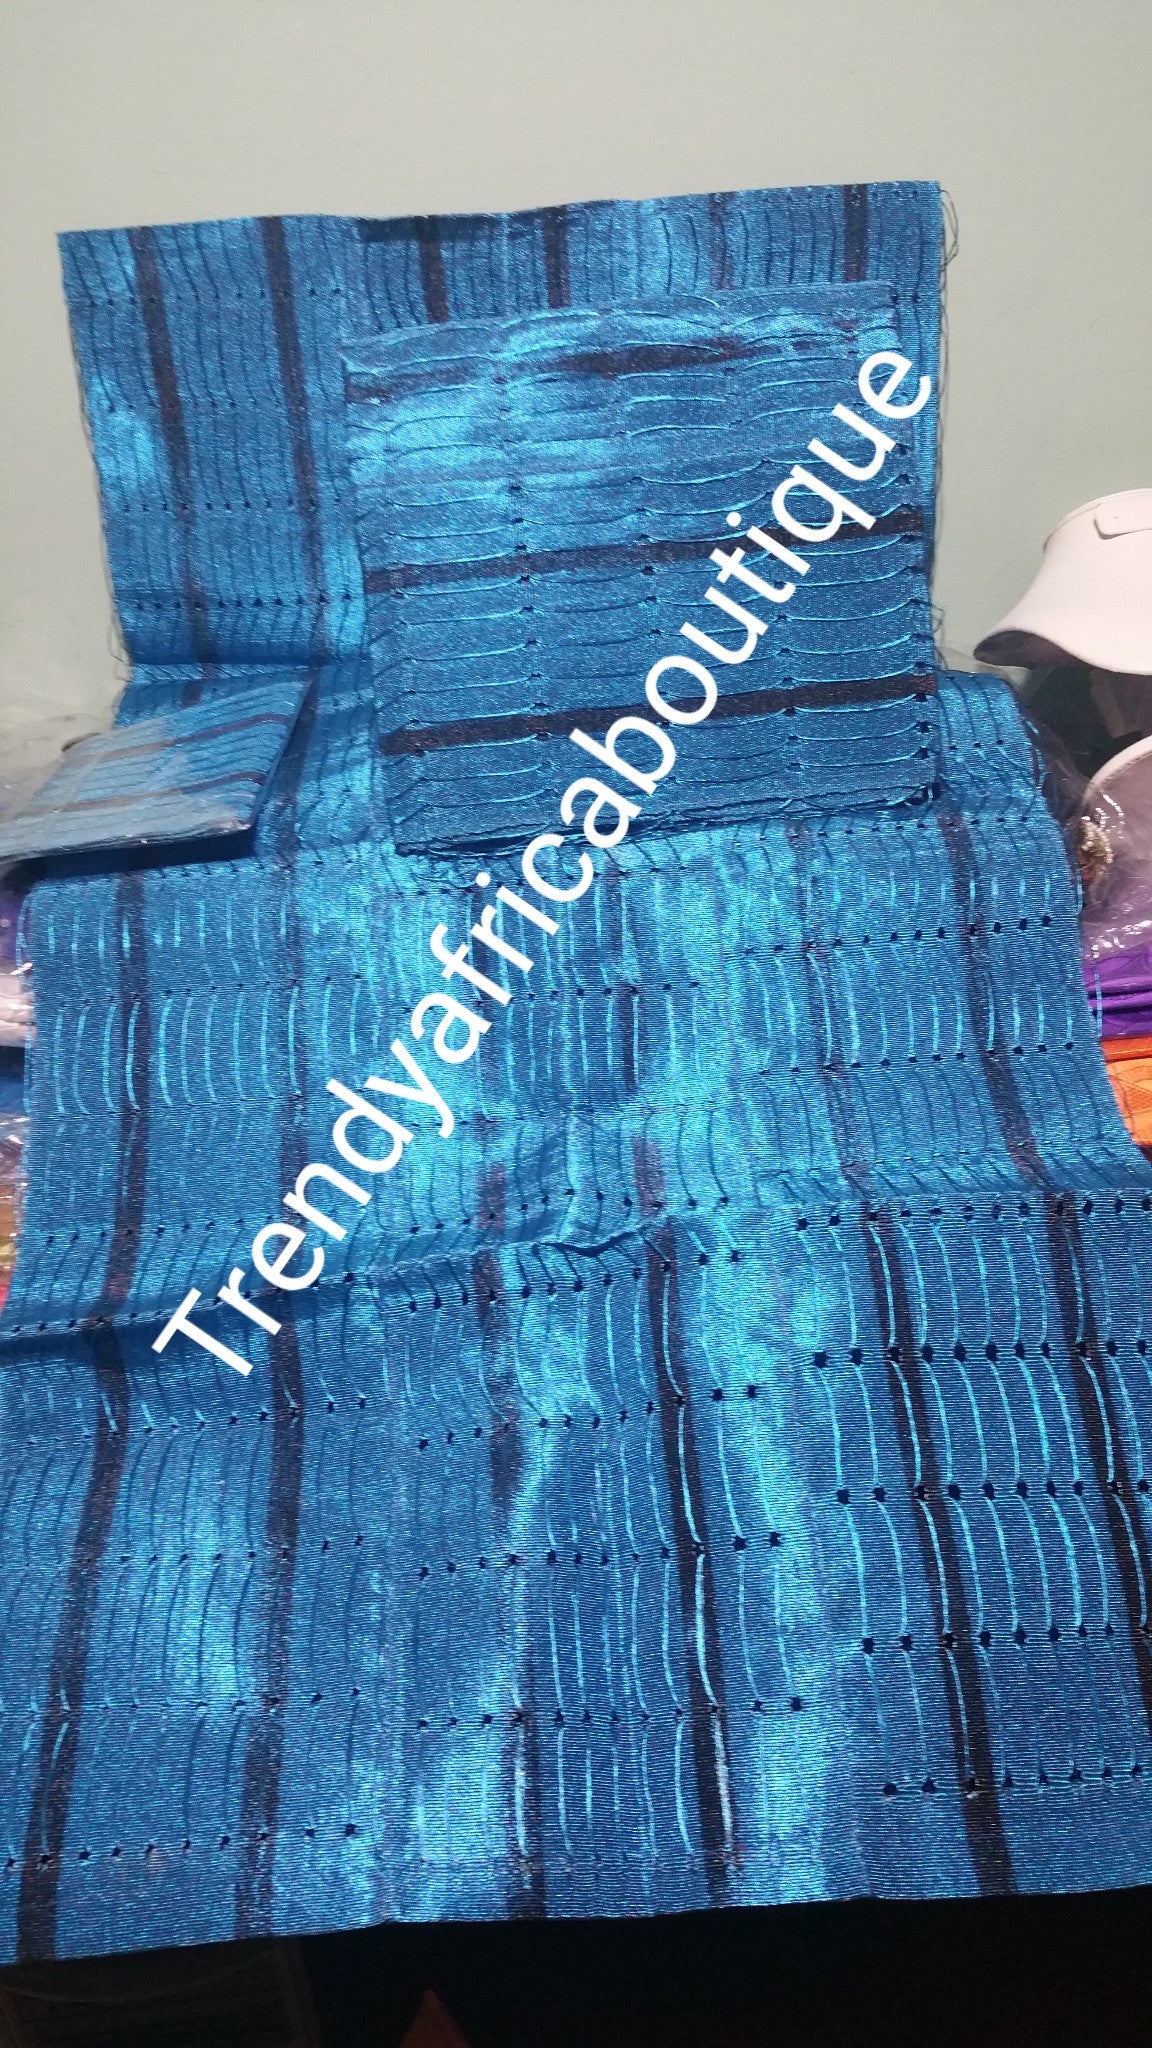 Turquoise blue/navy blue strips  Nigerian traditional aso-oke Gele/head tie for party wear. 3pcs set of gele/Ipele/cap piece